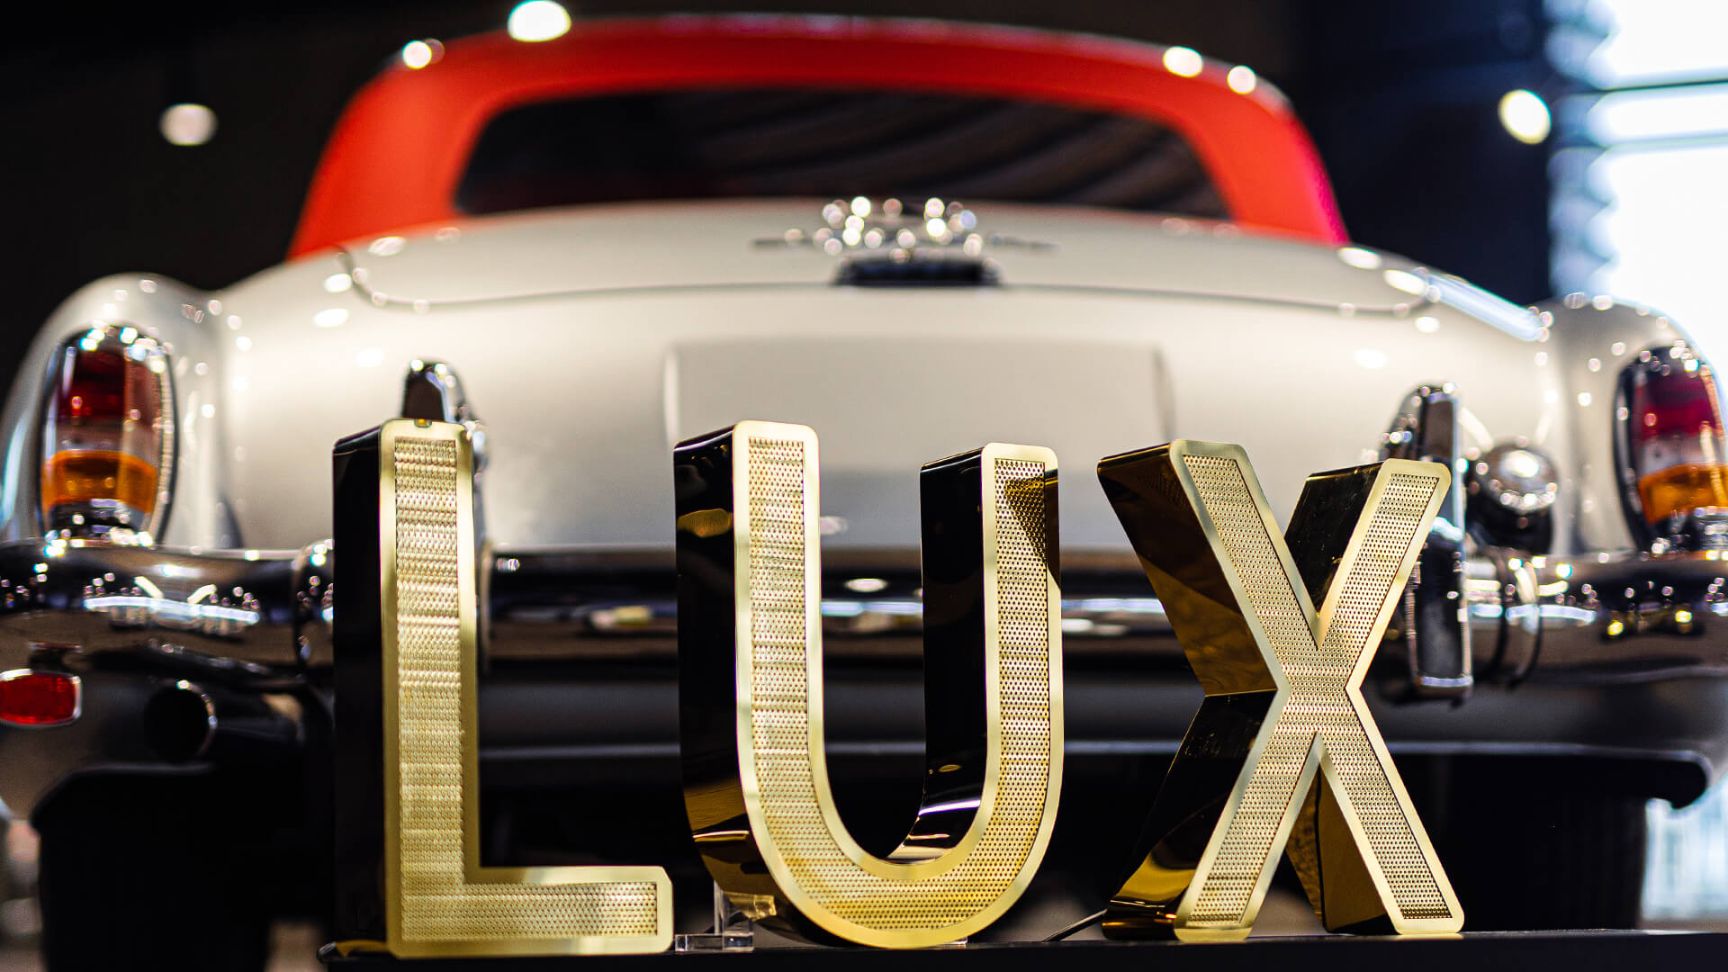 Lettere in acciaio inox perforato LUX - Scritta LUX in acciaio inox perforato, retroilluminata a LED, su sfondo Mercedes